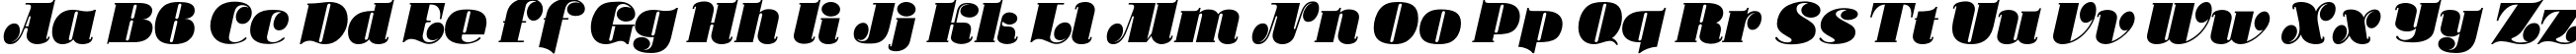 Пример написания английского алфавита шрифтом KaCallista